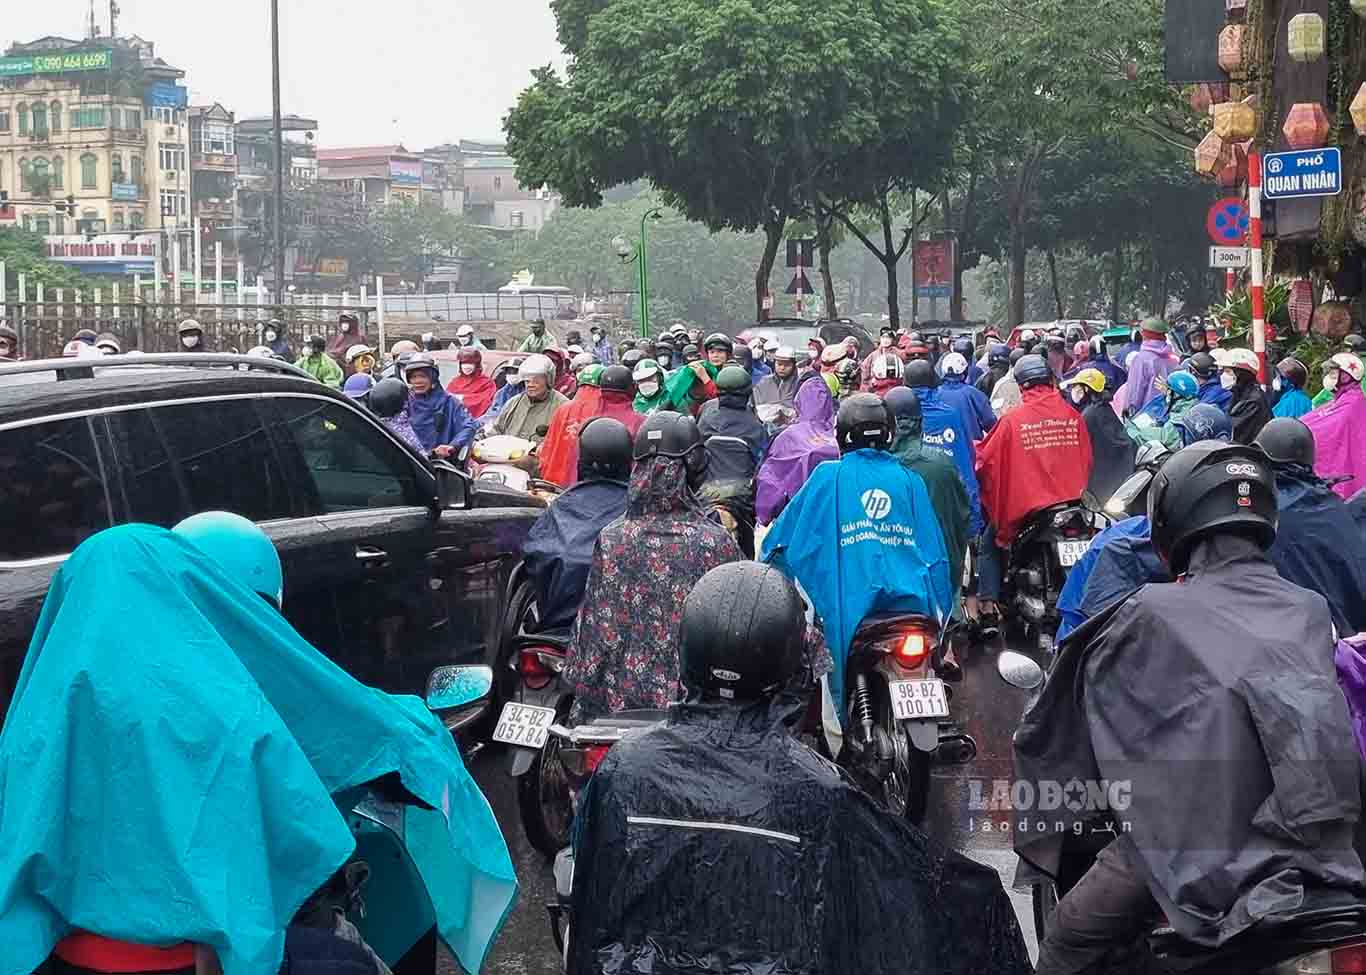 Nút giao Giáp Nhất - Nguyễn Ngọc Vũ ùn tắc cục bộ, nhiều thời điểm phố Nguyễn Ngọc Vũ “biến” thành đường 1 chiều do các xe máy đi theo kiểu điền vào chỗ trống.